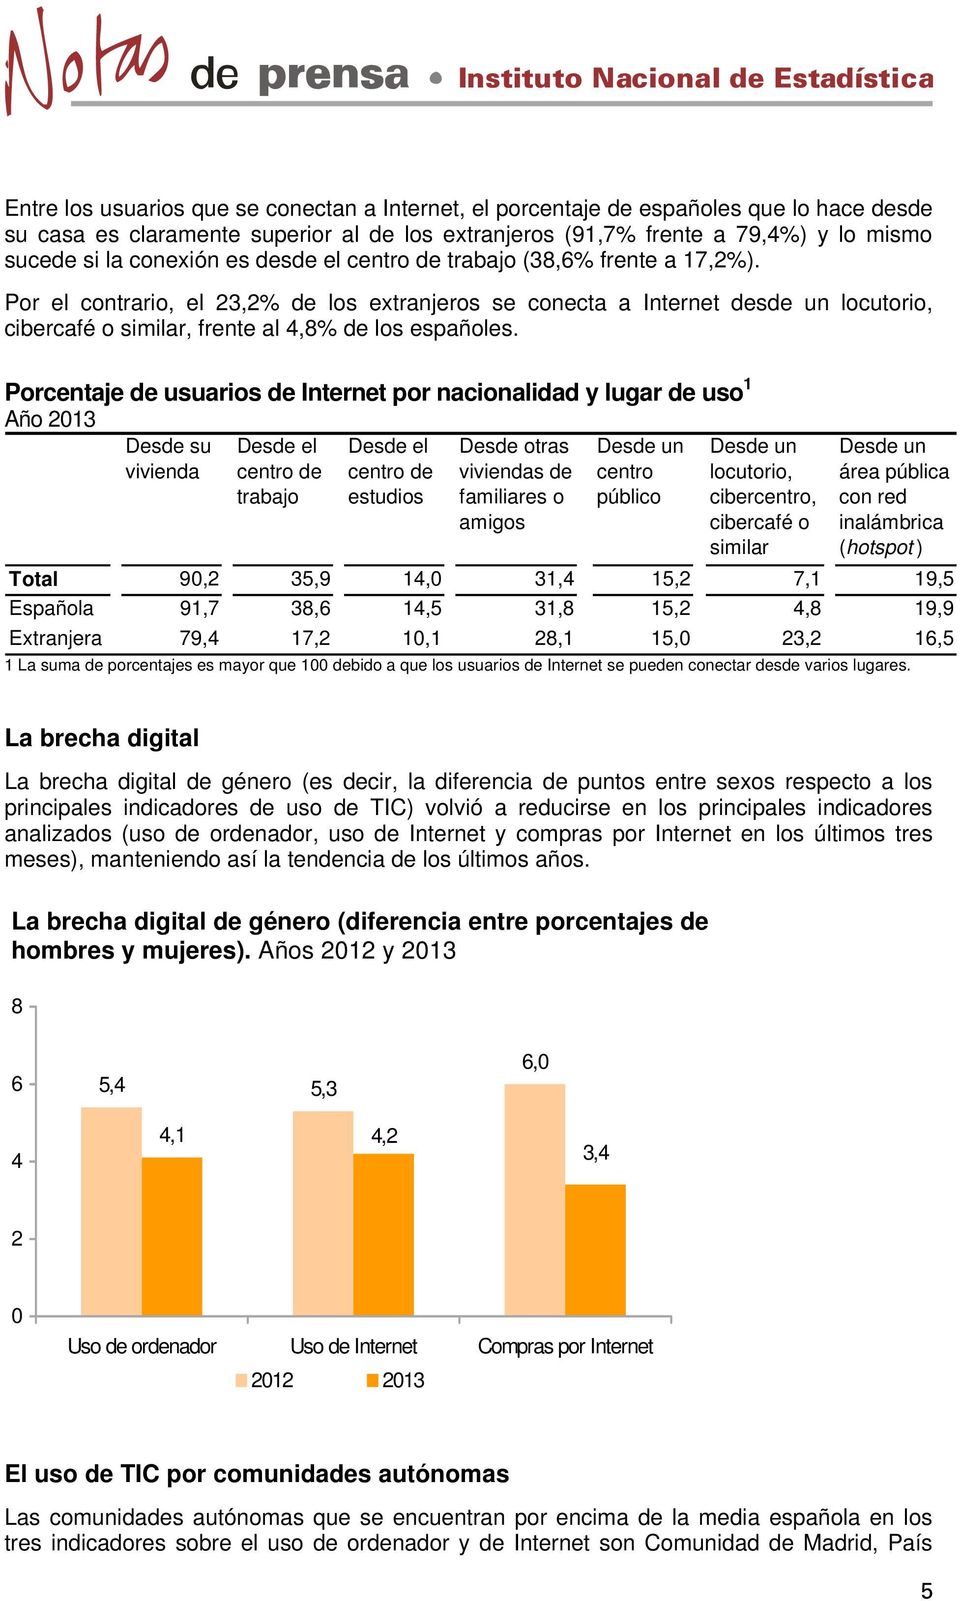 Por el contrario, el 23,2% de los extranjeros se conecta a Internet desde un locutorio, cibercafé o similar, frente al 4,8% de los españoles.